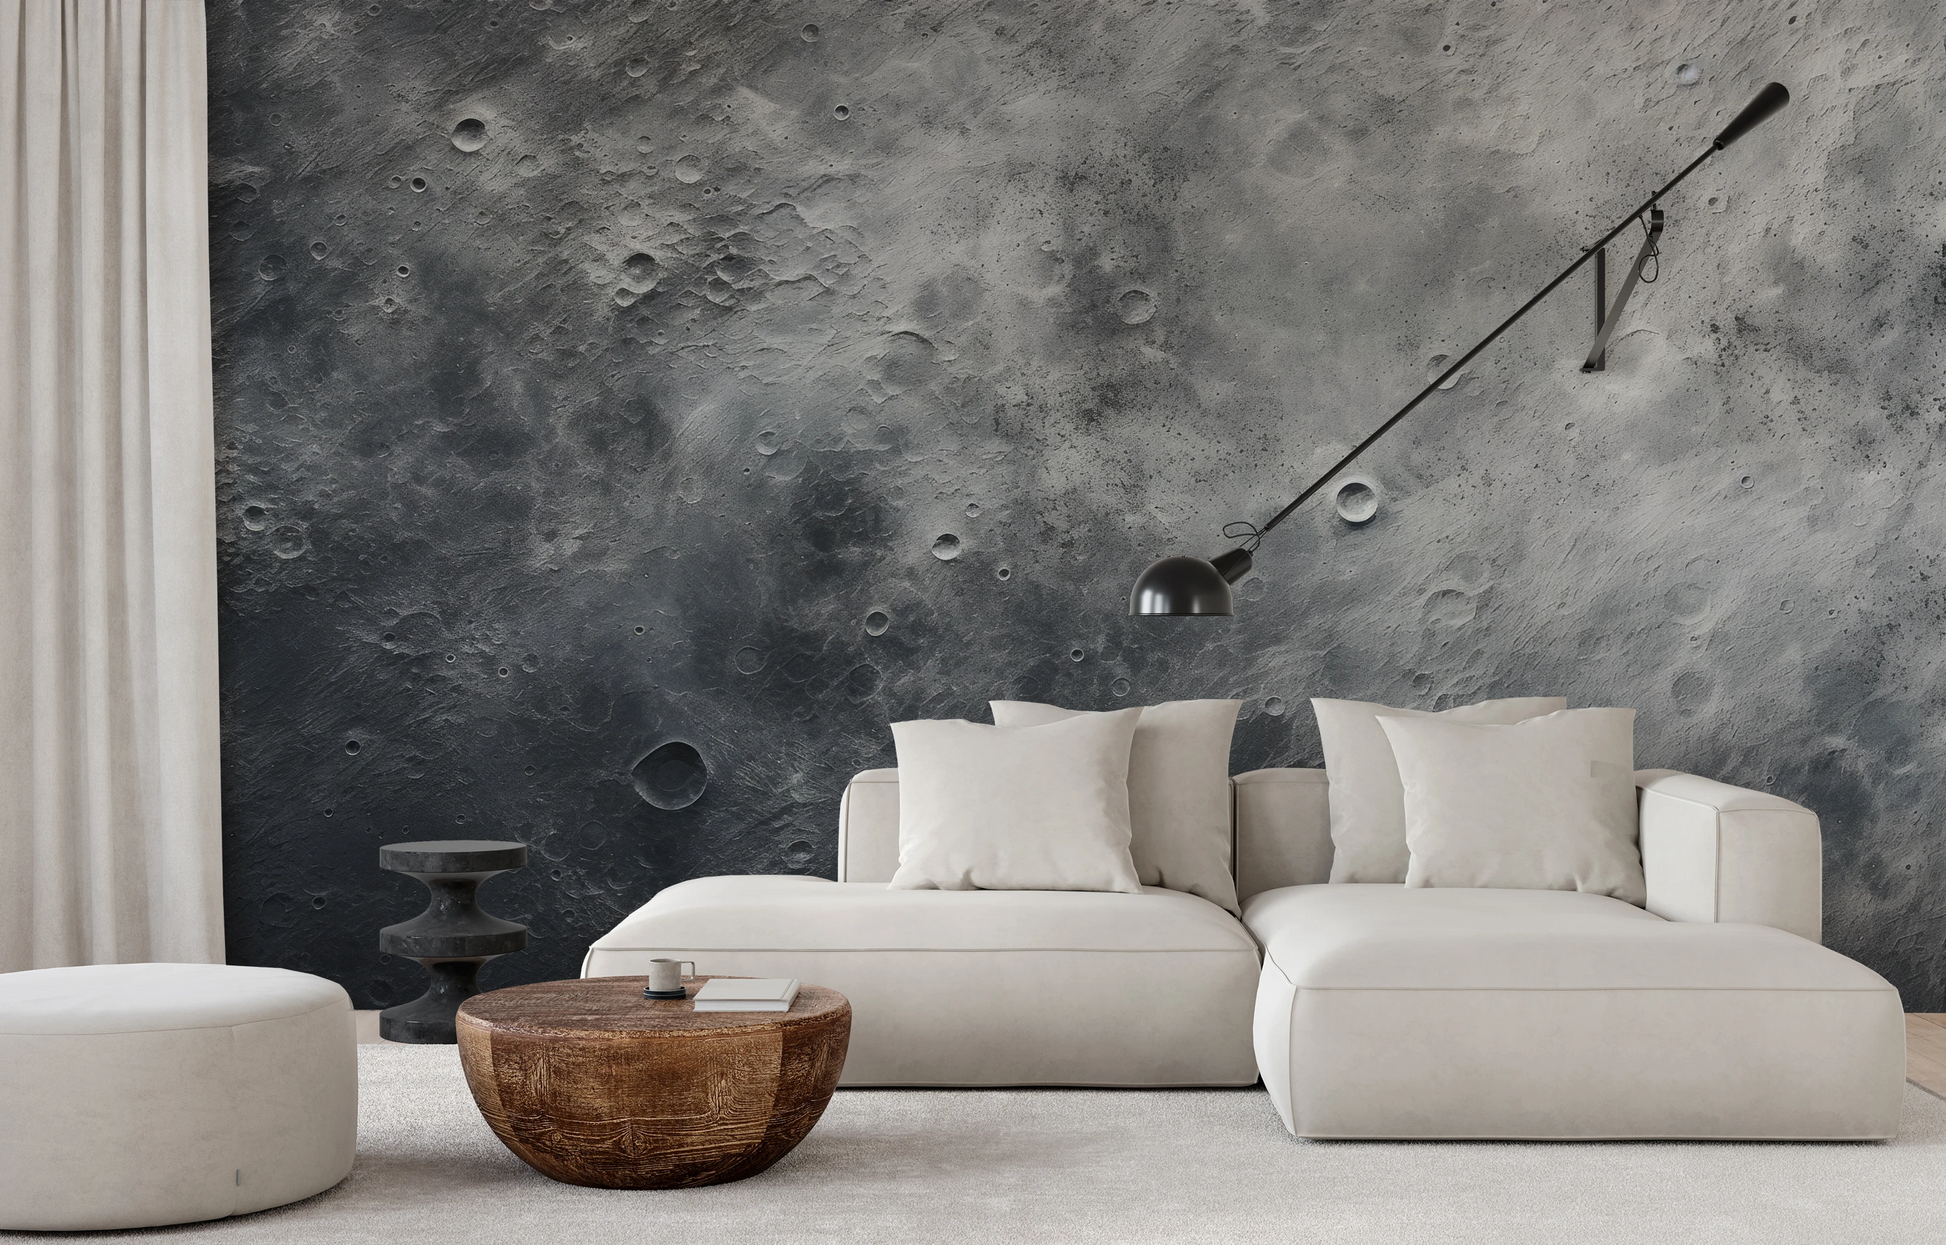 Fototapeta malowana o nazwie Jovian Vortex pokazana w aranżacji wnętrza.